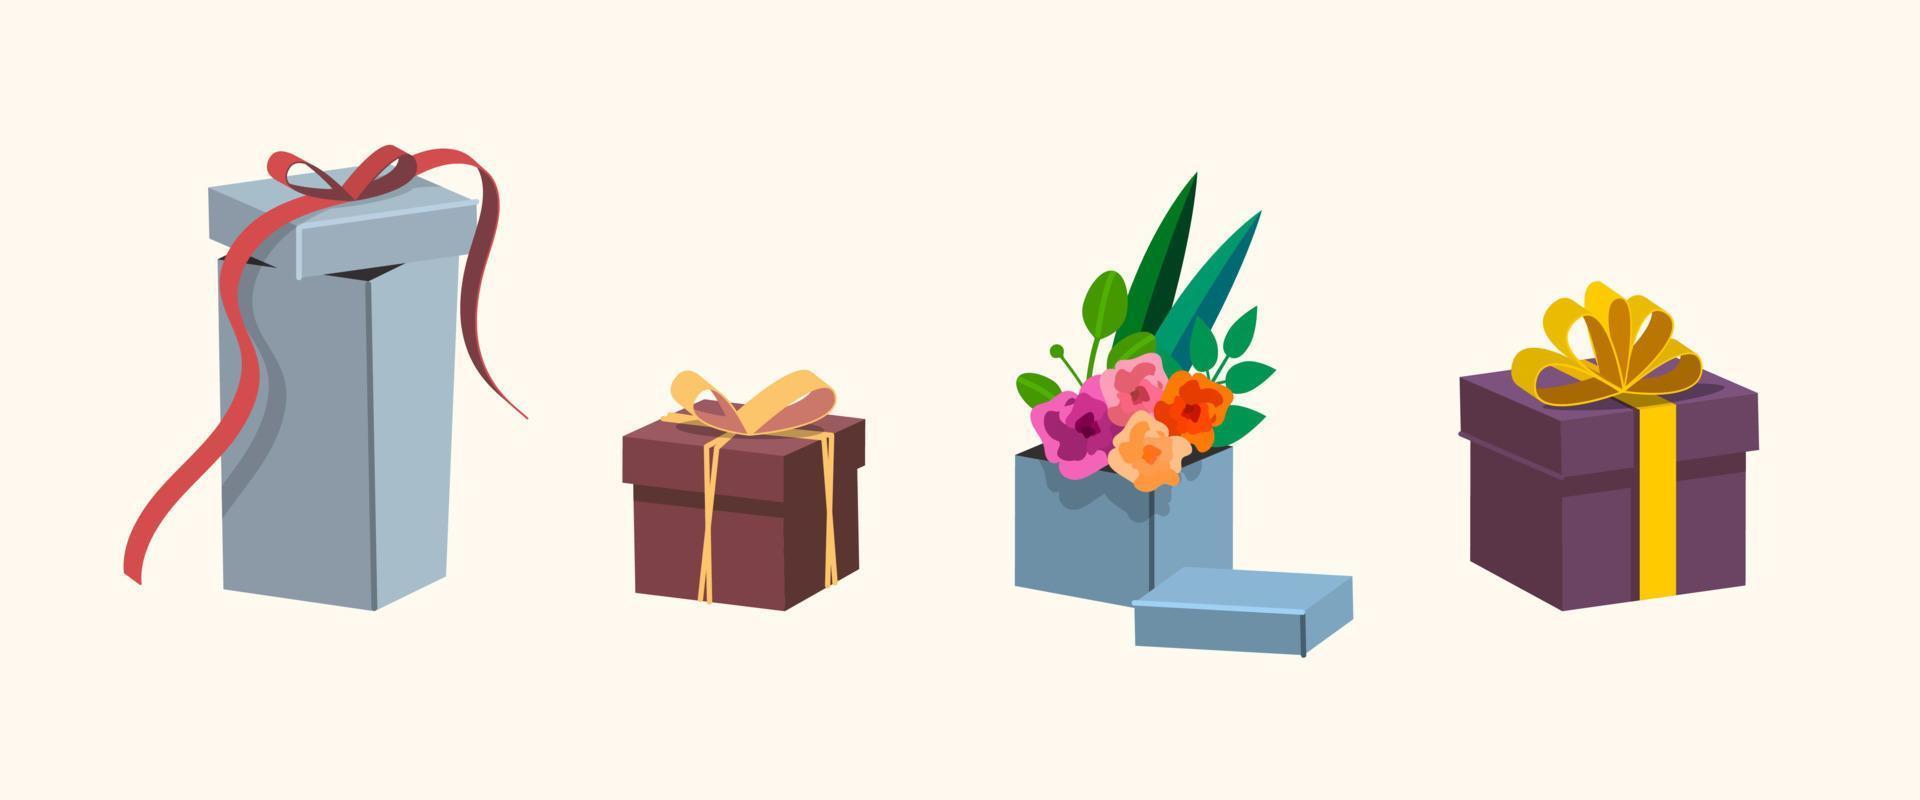 conjunto de caja de regalo colorida con cintas y flores. ilustración vectorial en estilo plano de tendencia. todos los objetos están aislados vector